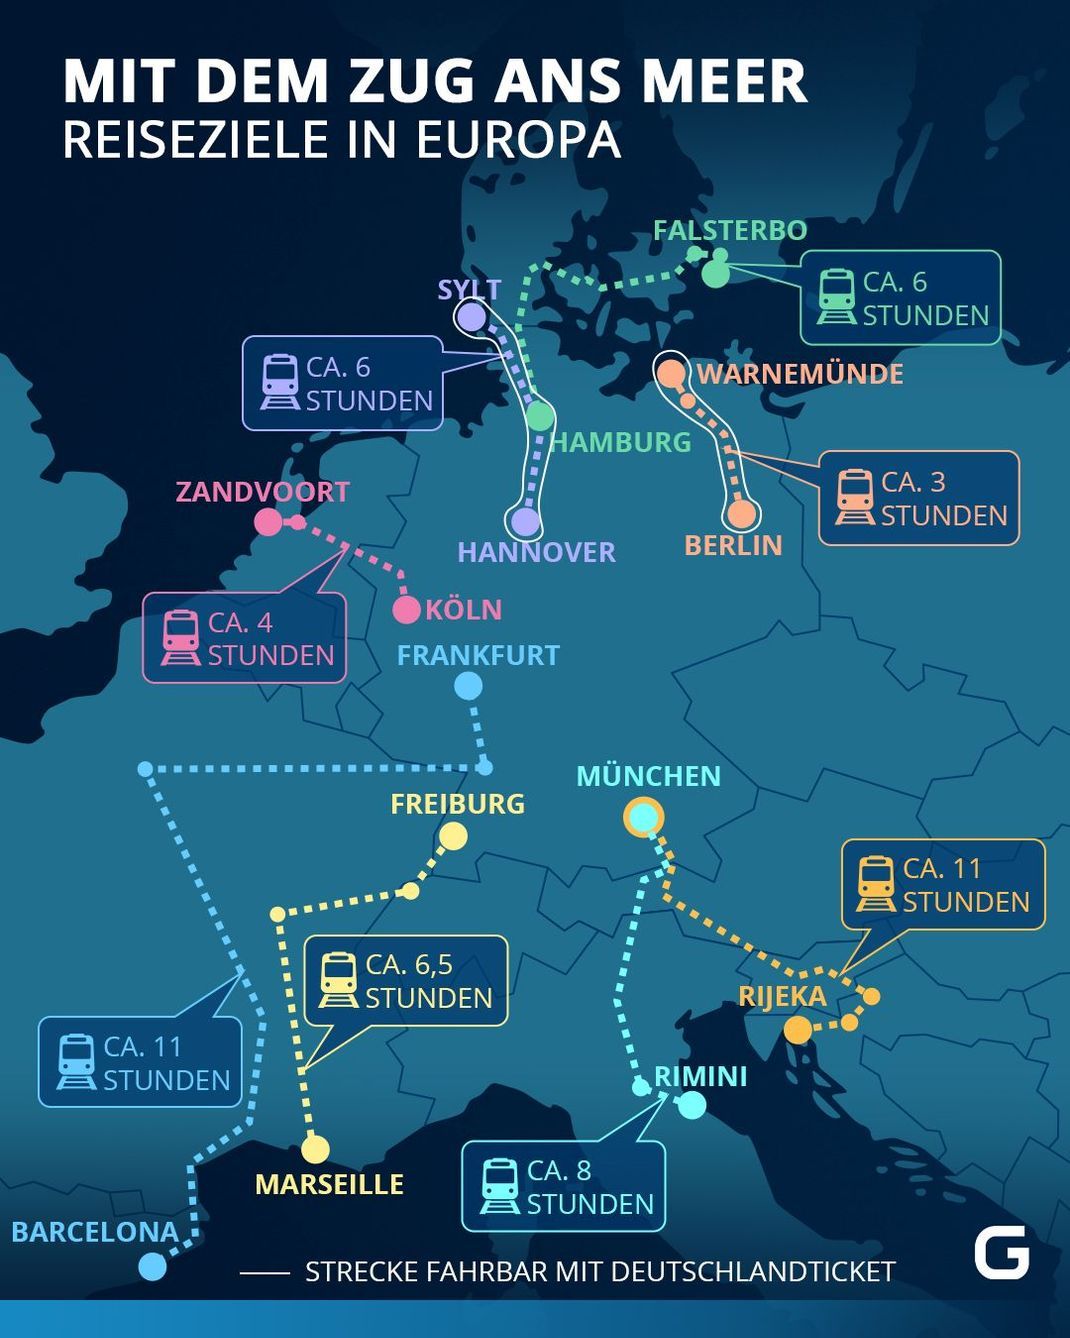 Reiseziele in Europa, die du mit dem Zug erreichen kannst 